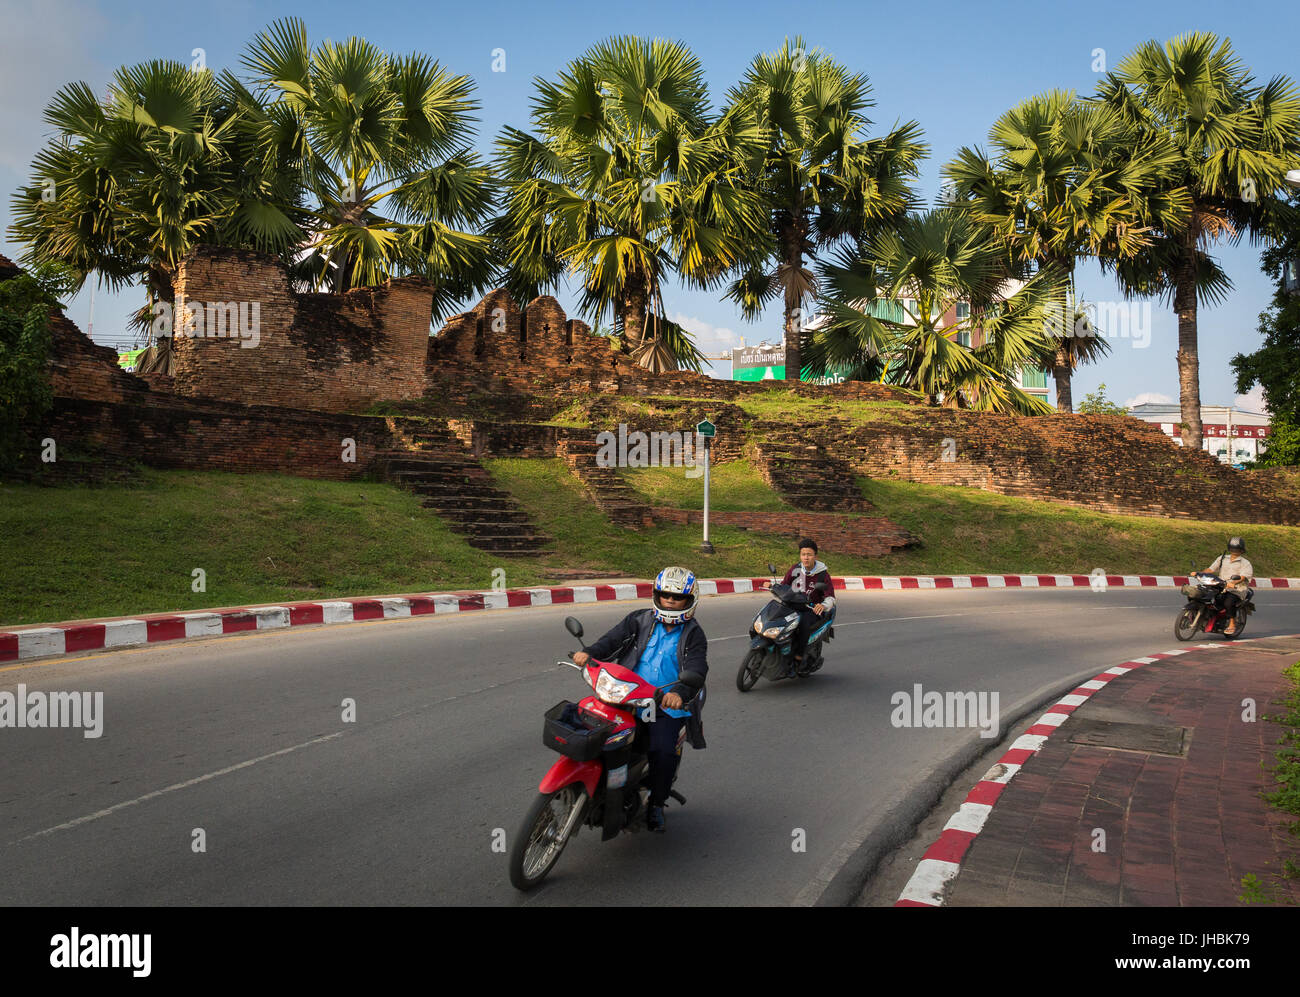 Tre persone andare in motocicletta intorno ad un angolo a Chiang Mai, Thailandia, con alberi di palma e il muro della città vecchia in background. Foto Stock